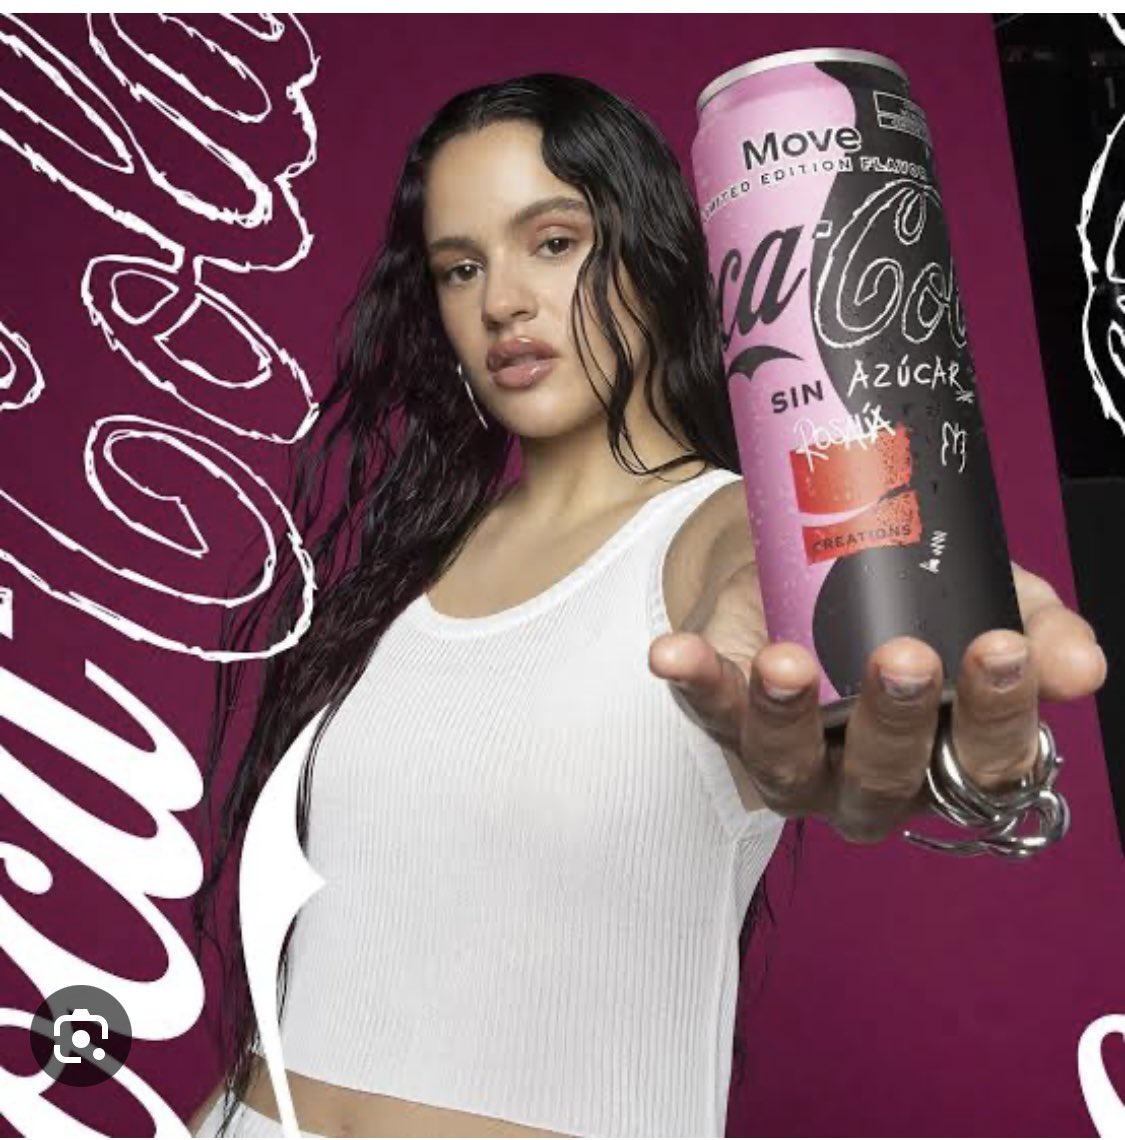 No es ético que figuras como
@rosalia o Bad Bunny se presten a promocionar productos como @CocaColaFM o @PepsiMEX que son nocivos para la salud. @elpoderdelc @SBarquera #comidachatarra #obesidad